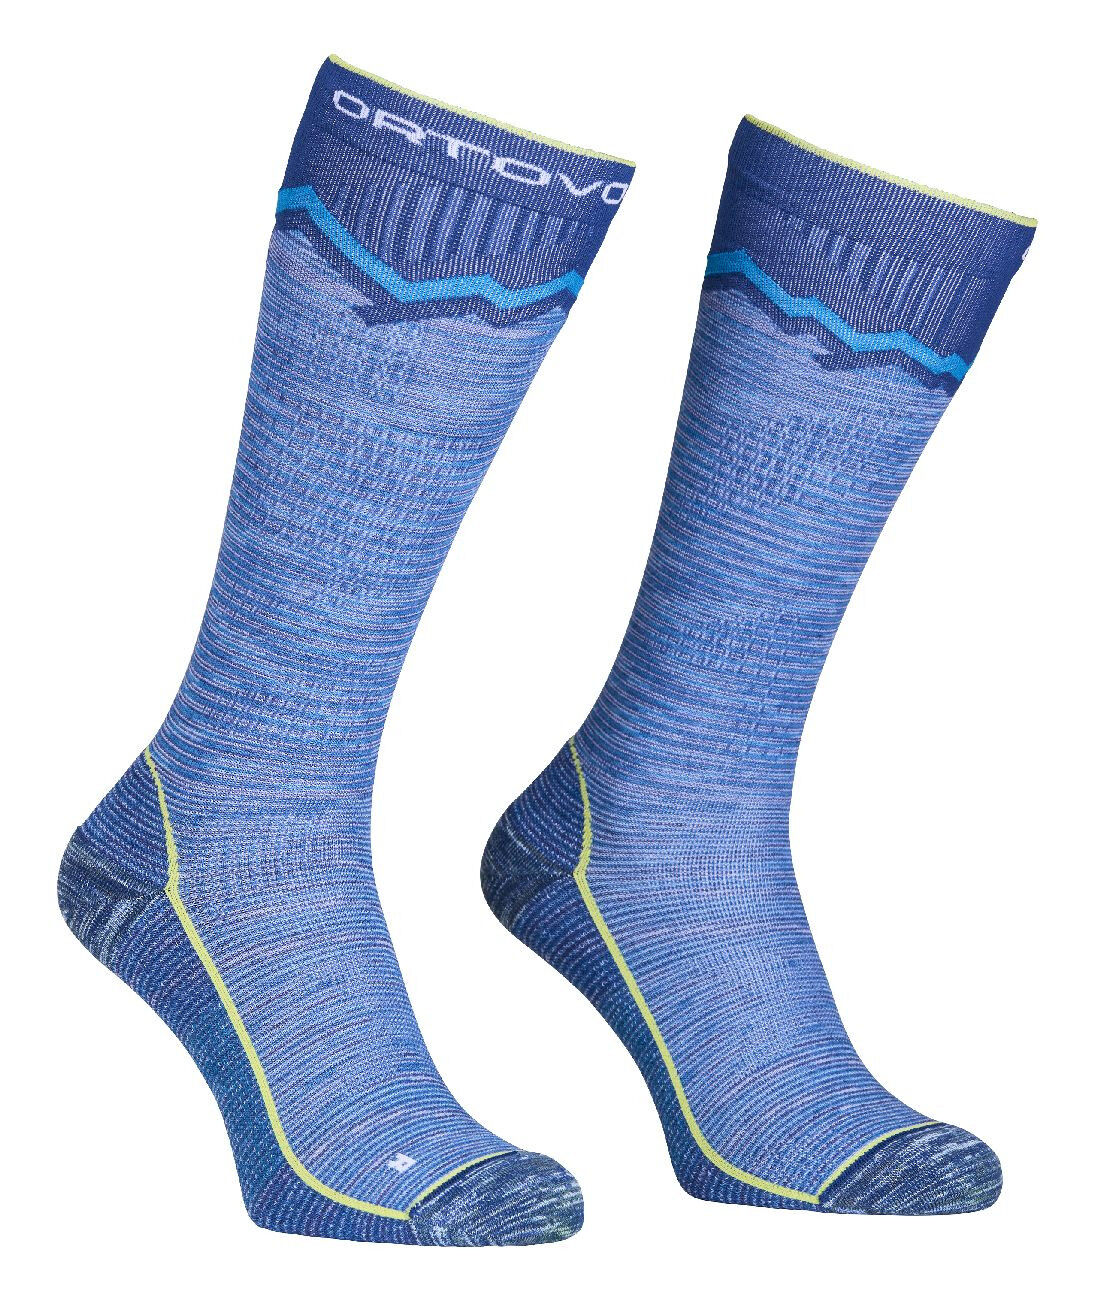 Ortovox Tour Long Socks - Calze da sci - Uomo